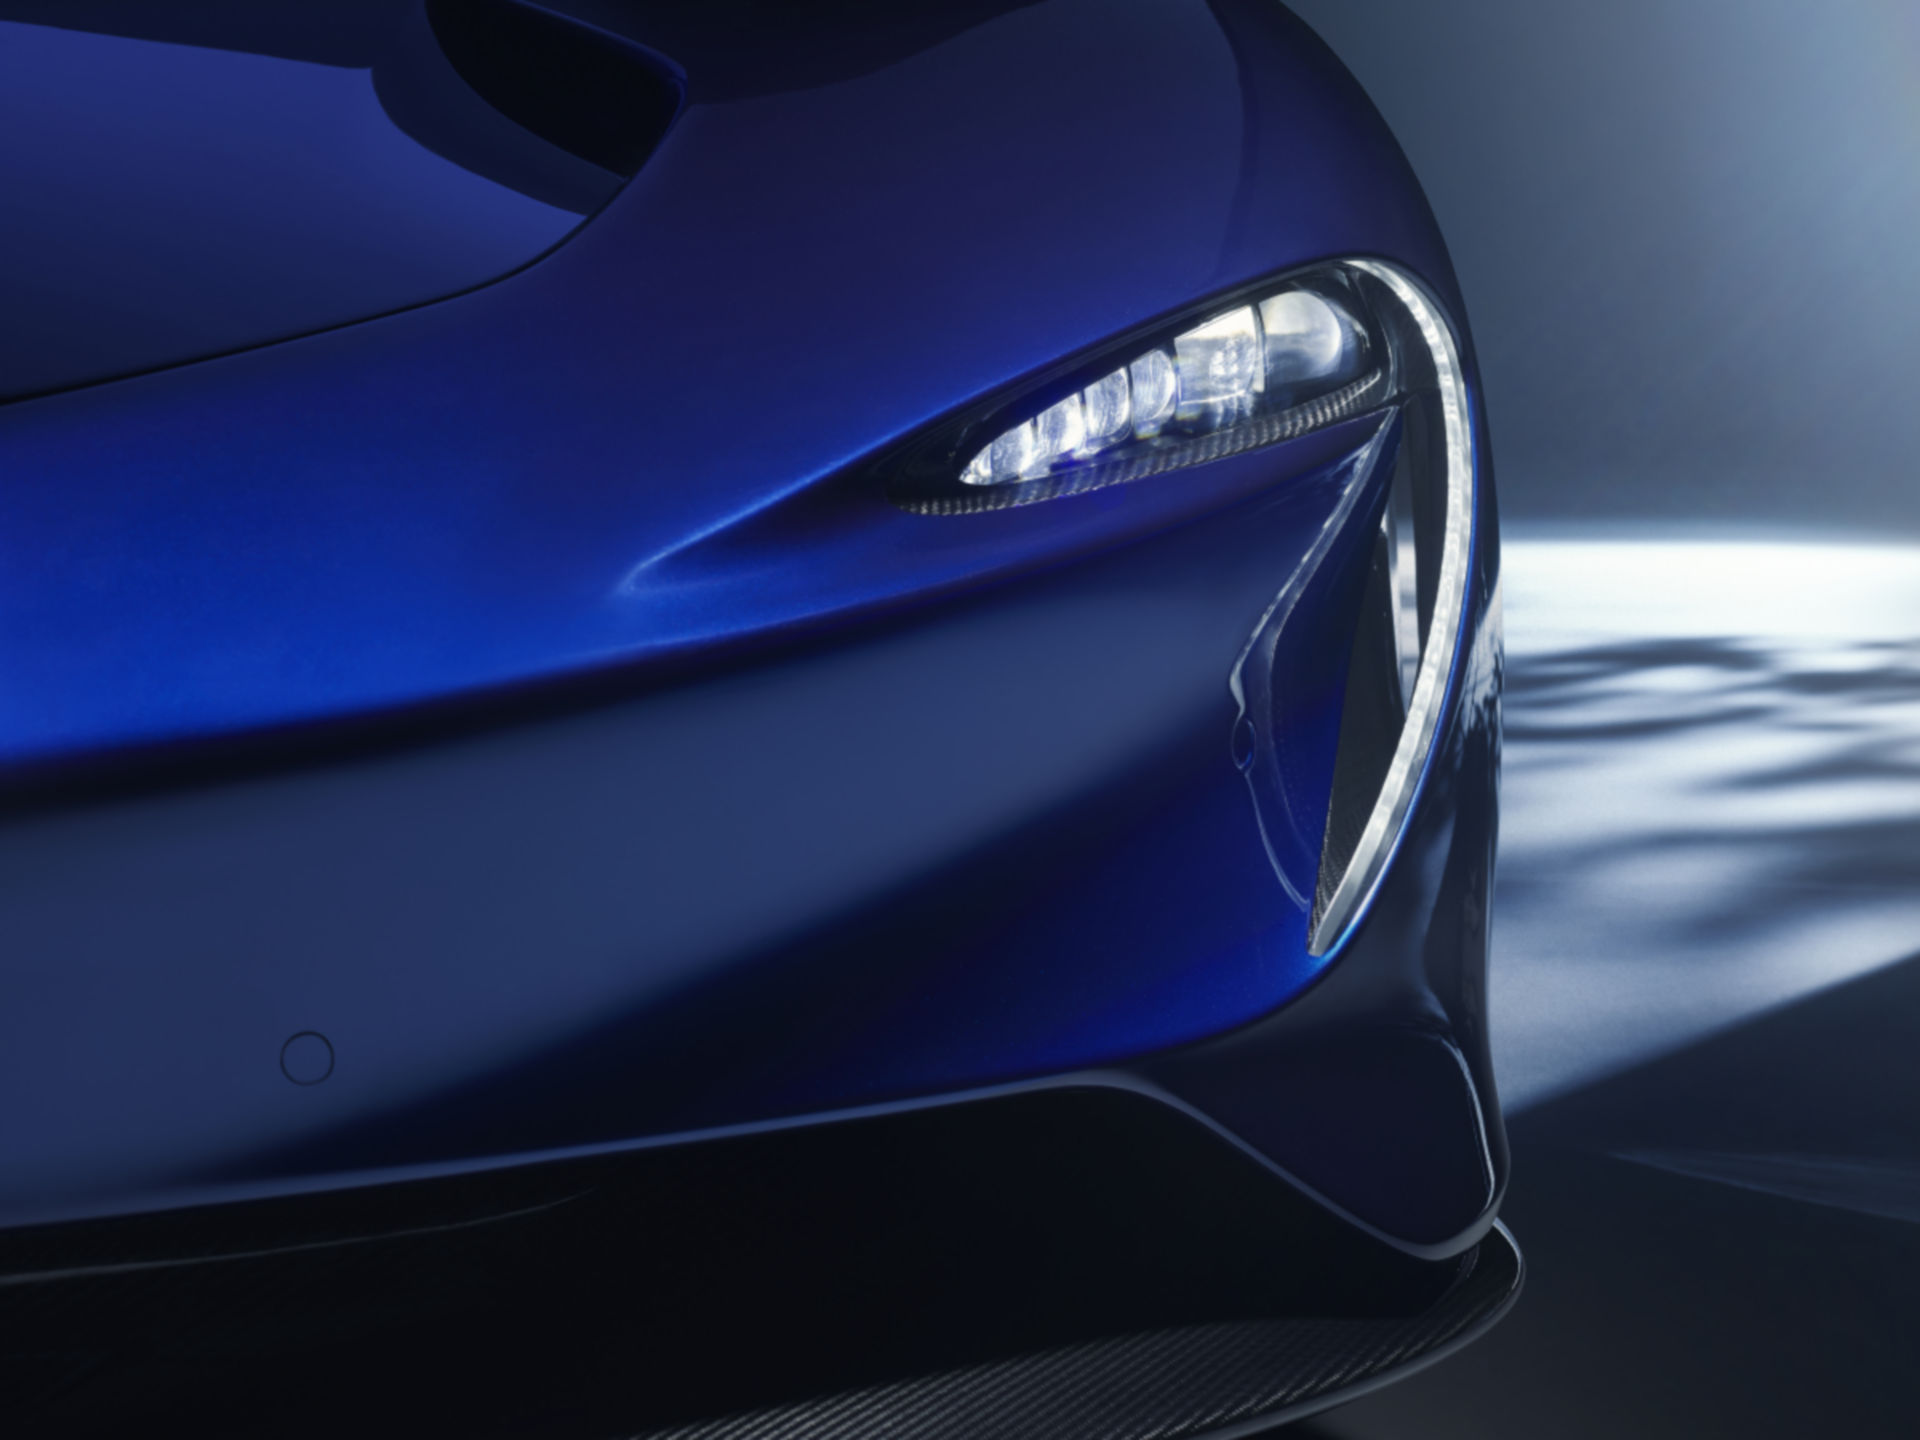 Siêu xe McLaren Speedtail: Bạn không thể bỏ qua hình ảnh về chiếc siêu xe McLaren Speedtail tuyệt đẹp và hiện đại. Với thiết kế cực kỳ độc đáo và năng lượng mạnh mẽ từ động cơ hybrid, chiếc xe này thực sự là niềm tự hào của thế giới siêu xe.